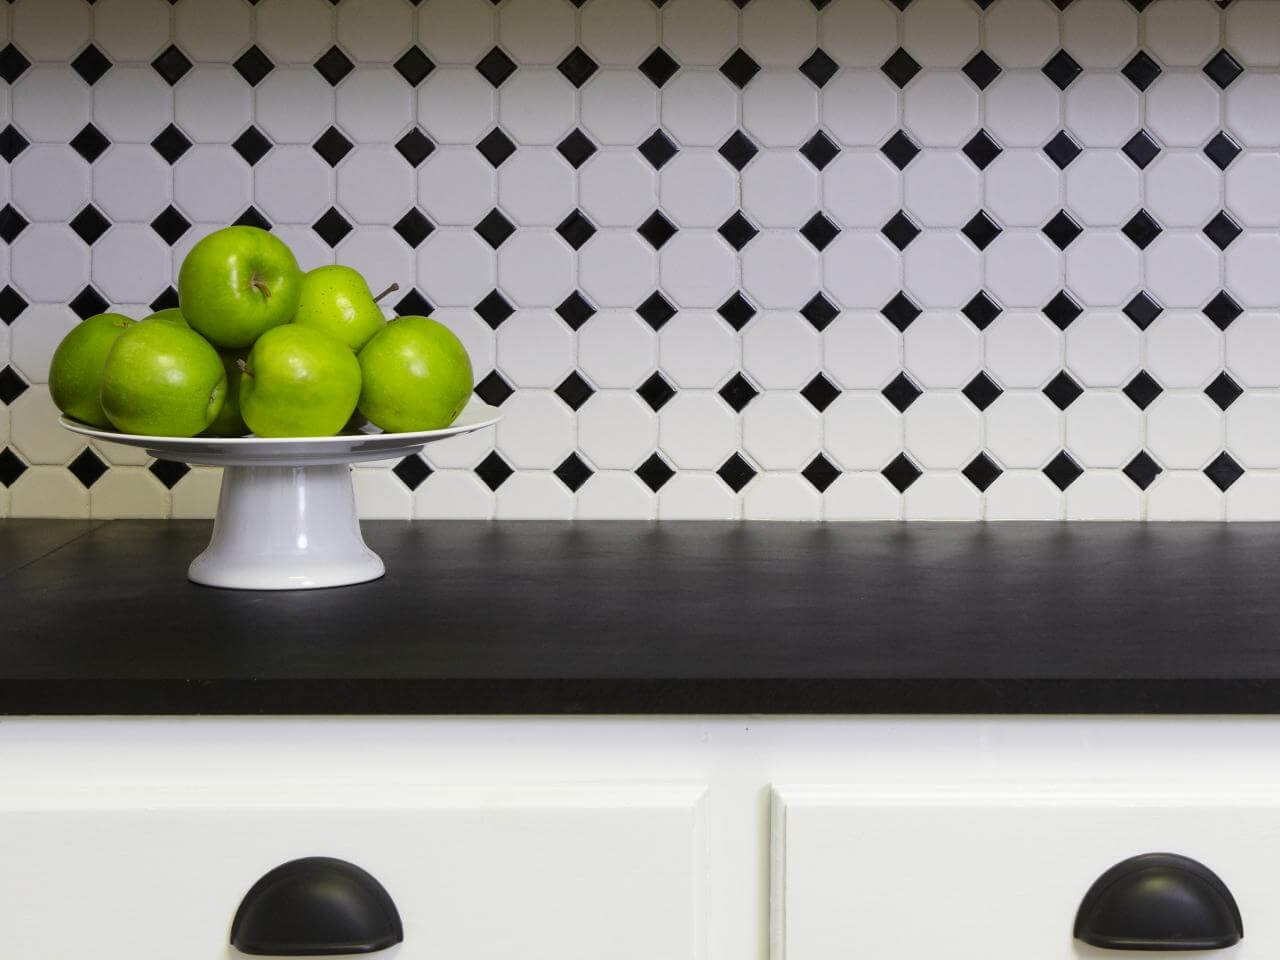 Creative, simple kitchen splashback